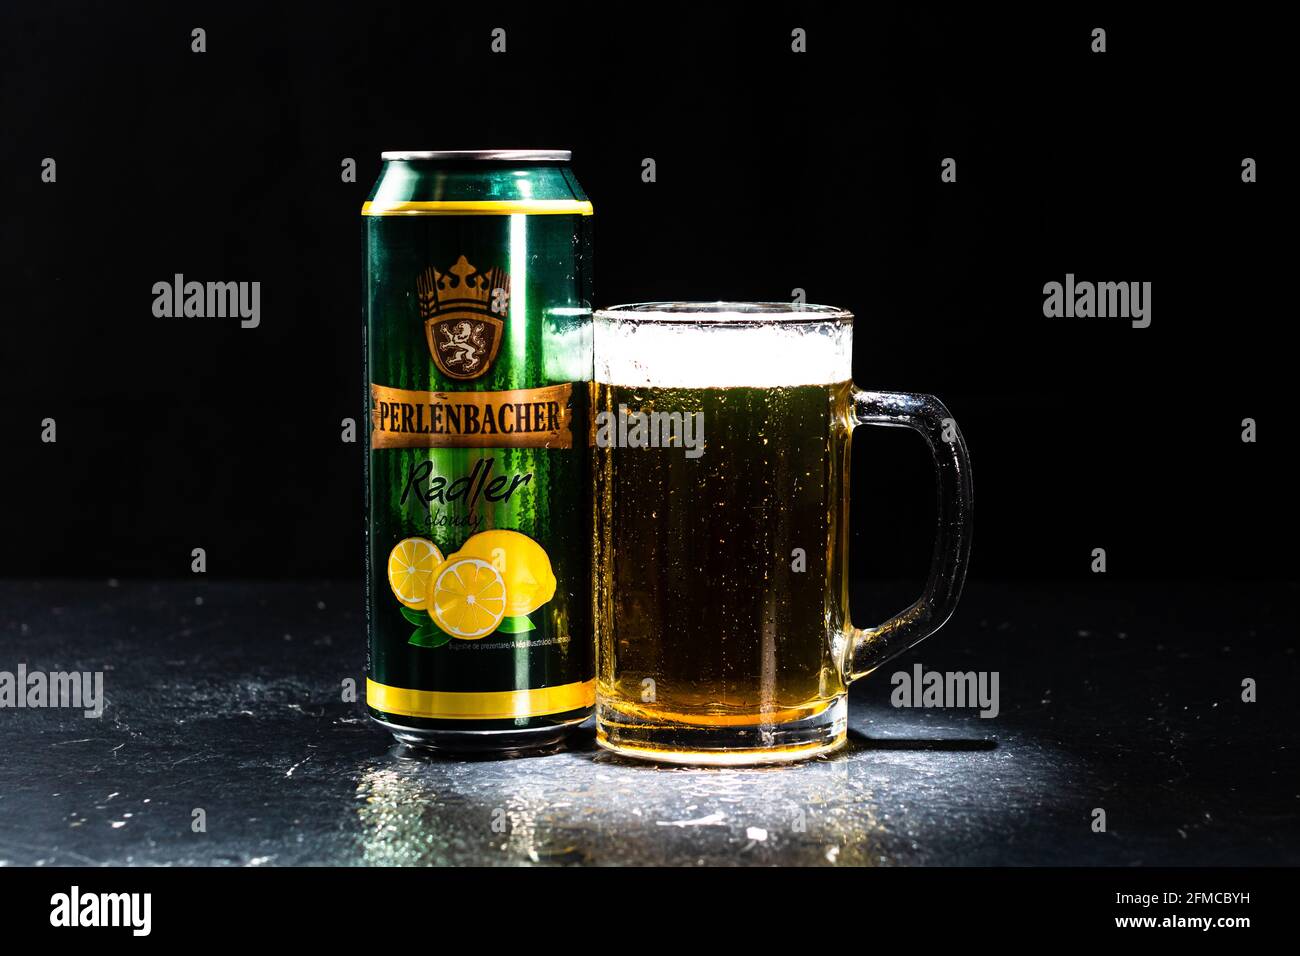 Lattina di birra Perlenbacher Radler e bicchiere di birra su sfondo scuro.  Fotografia editoriale illustrativa scattata a Bucarest, Romania, 2021 Foto  stock - Alamy